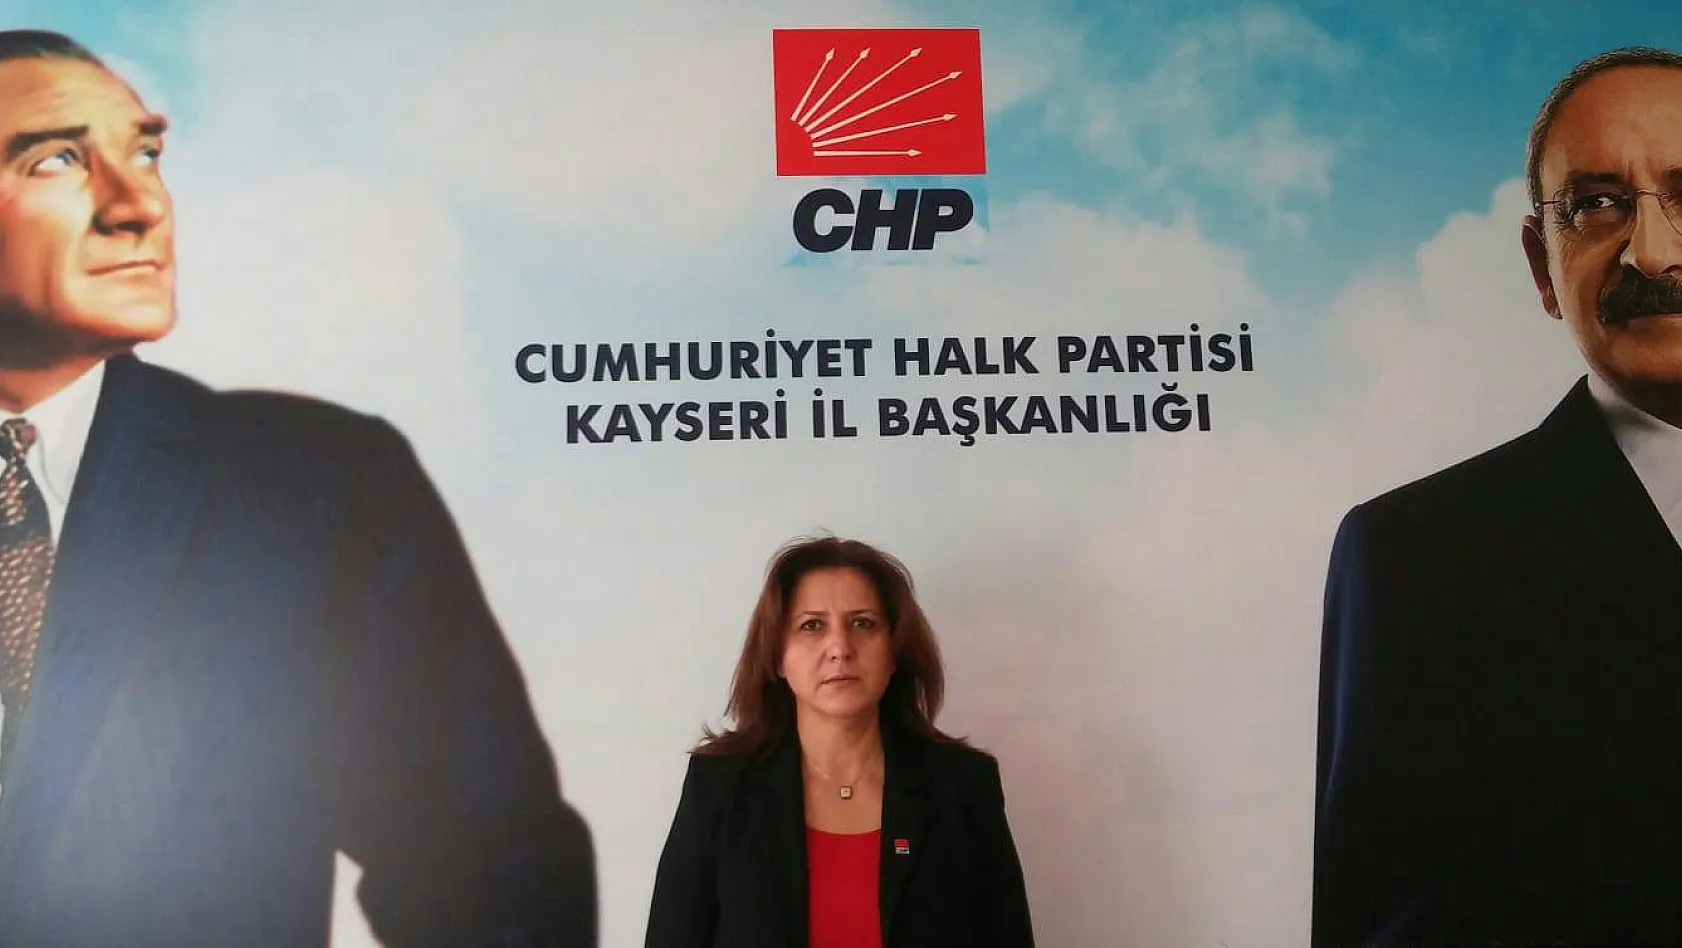 CHP İl Başkanı Özer: Kayseri'nin ilçe sayısı mı arttı? Yine kandırmışlar!